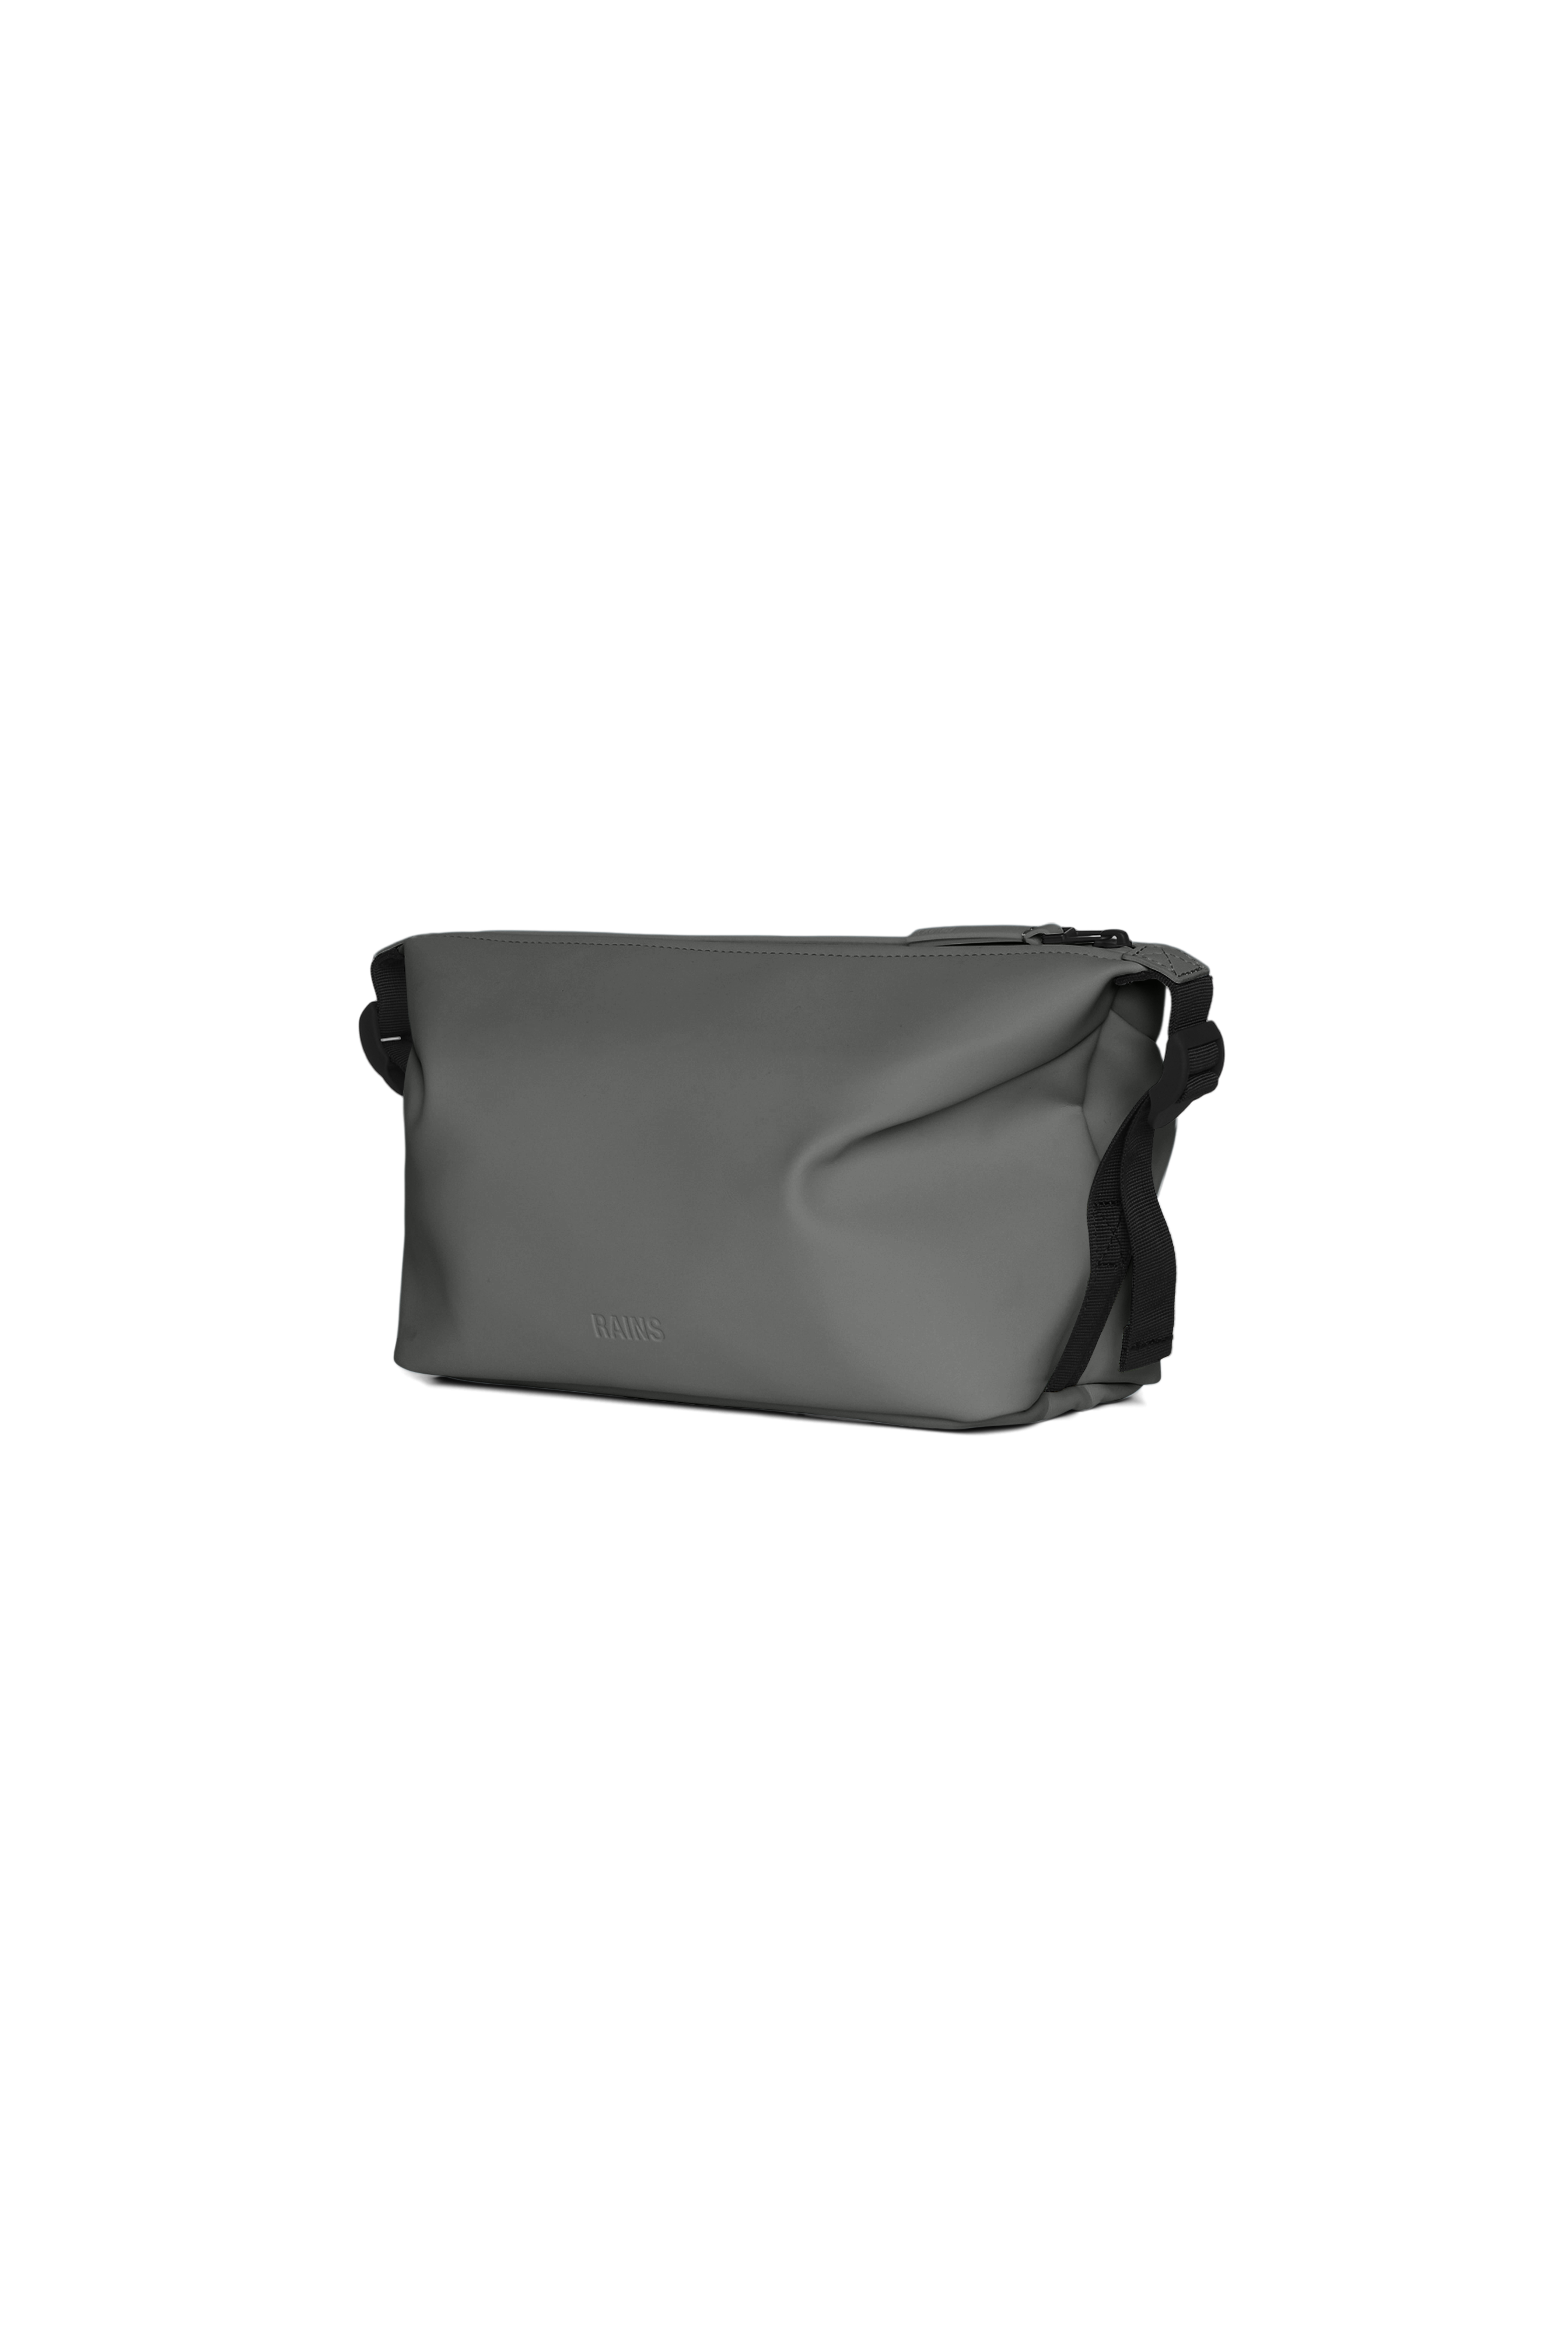 Hilo Wash Bag W3 - Grey